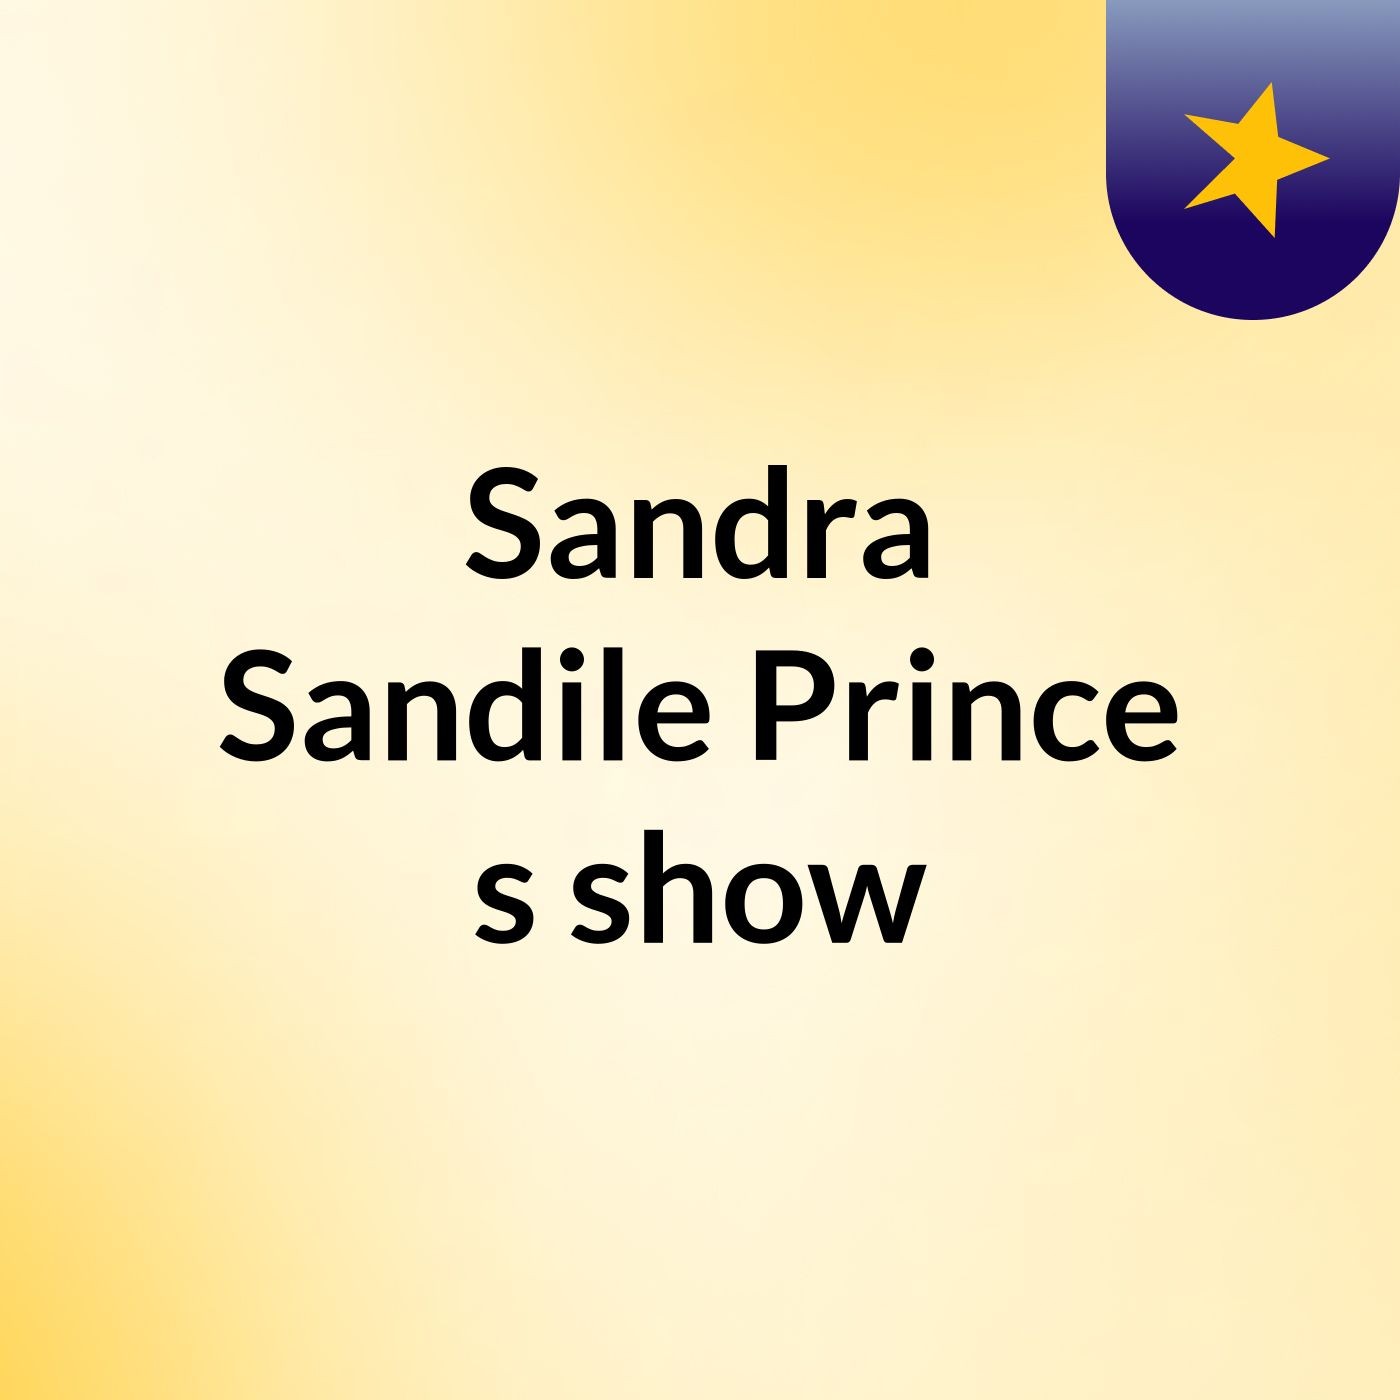 Sandra Sandile Prince's show